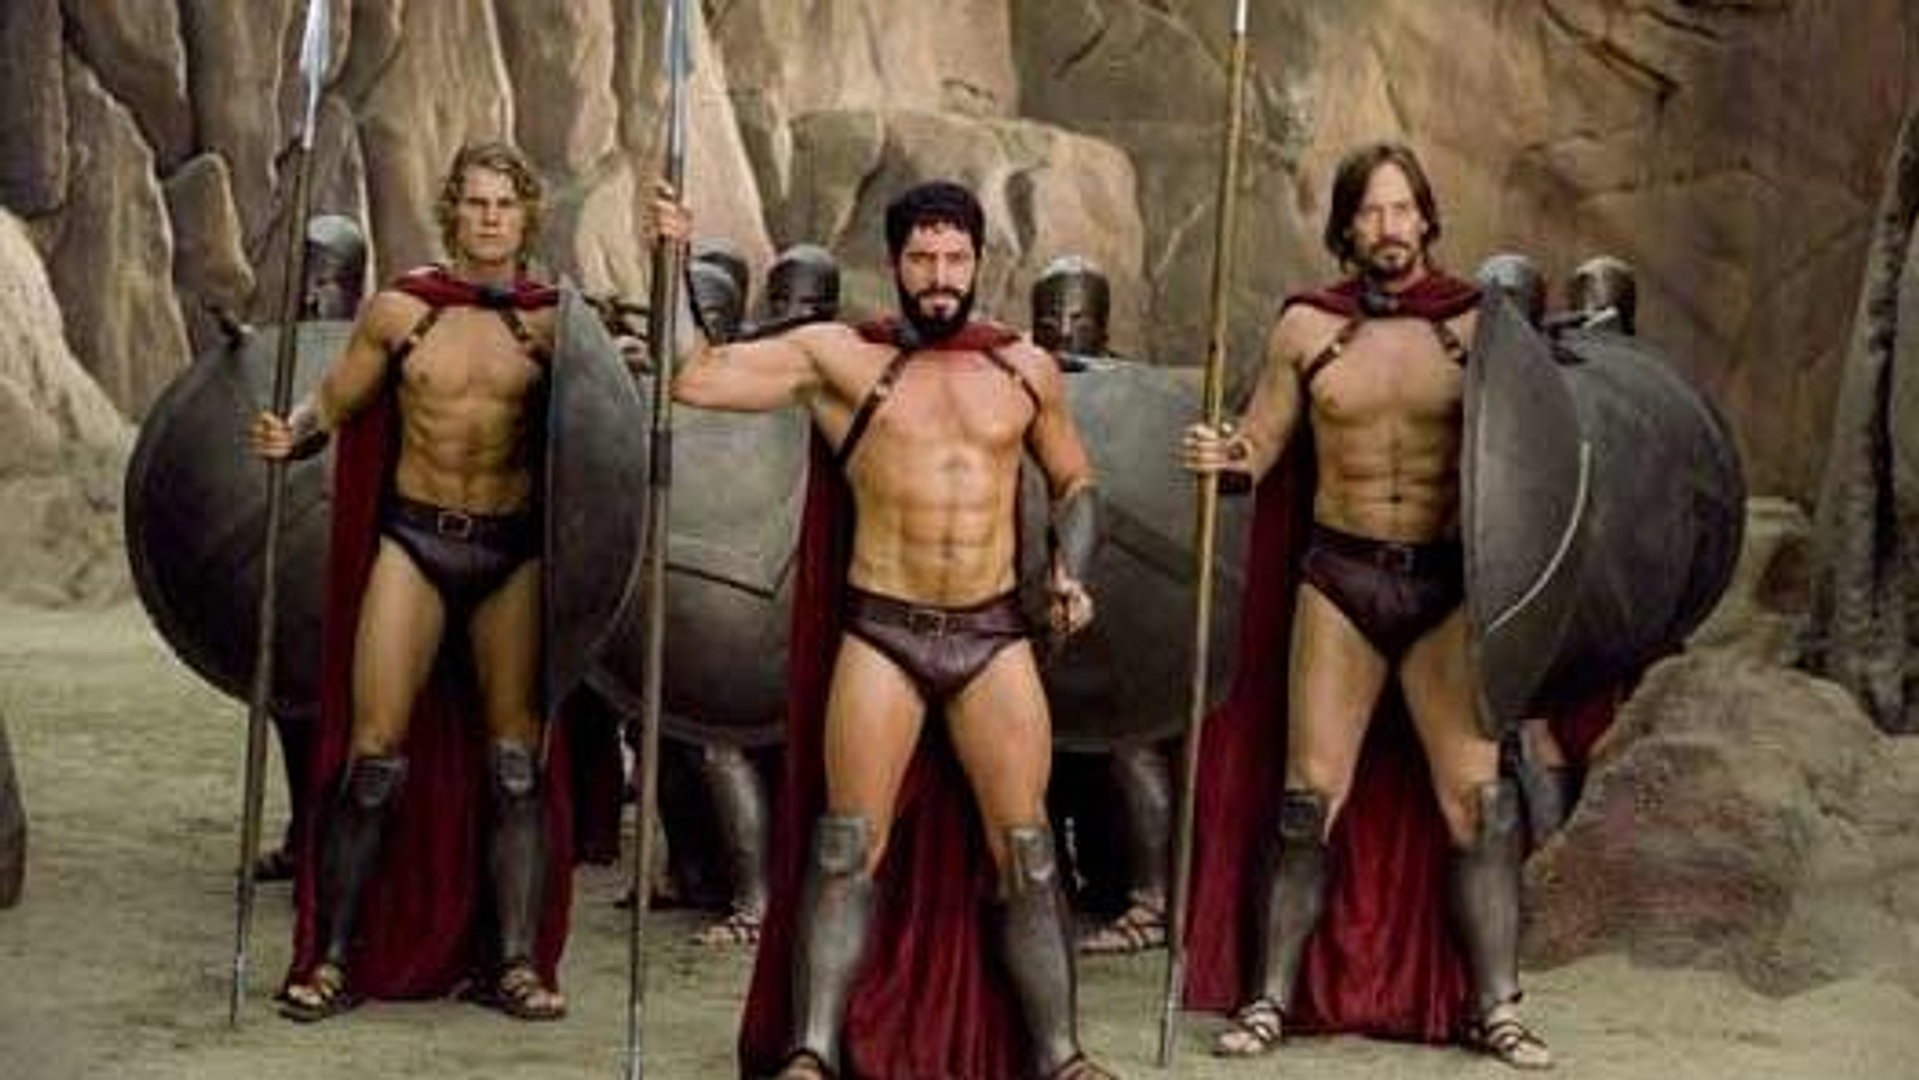 Meet the Spartans